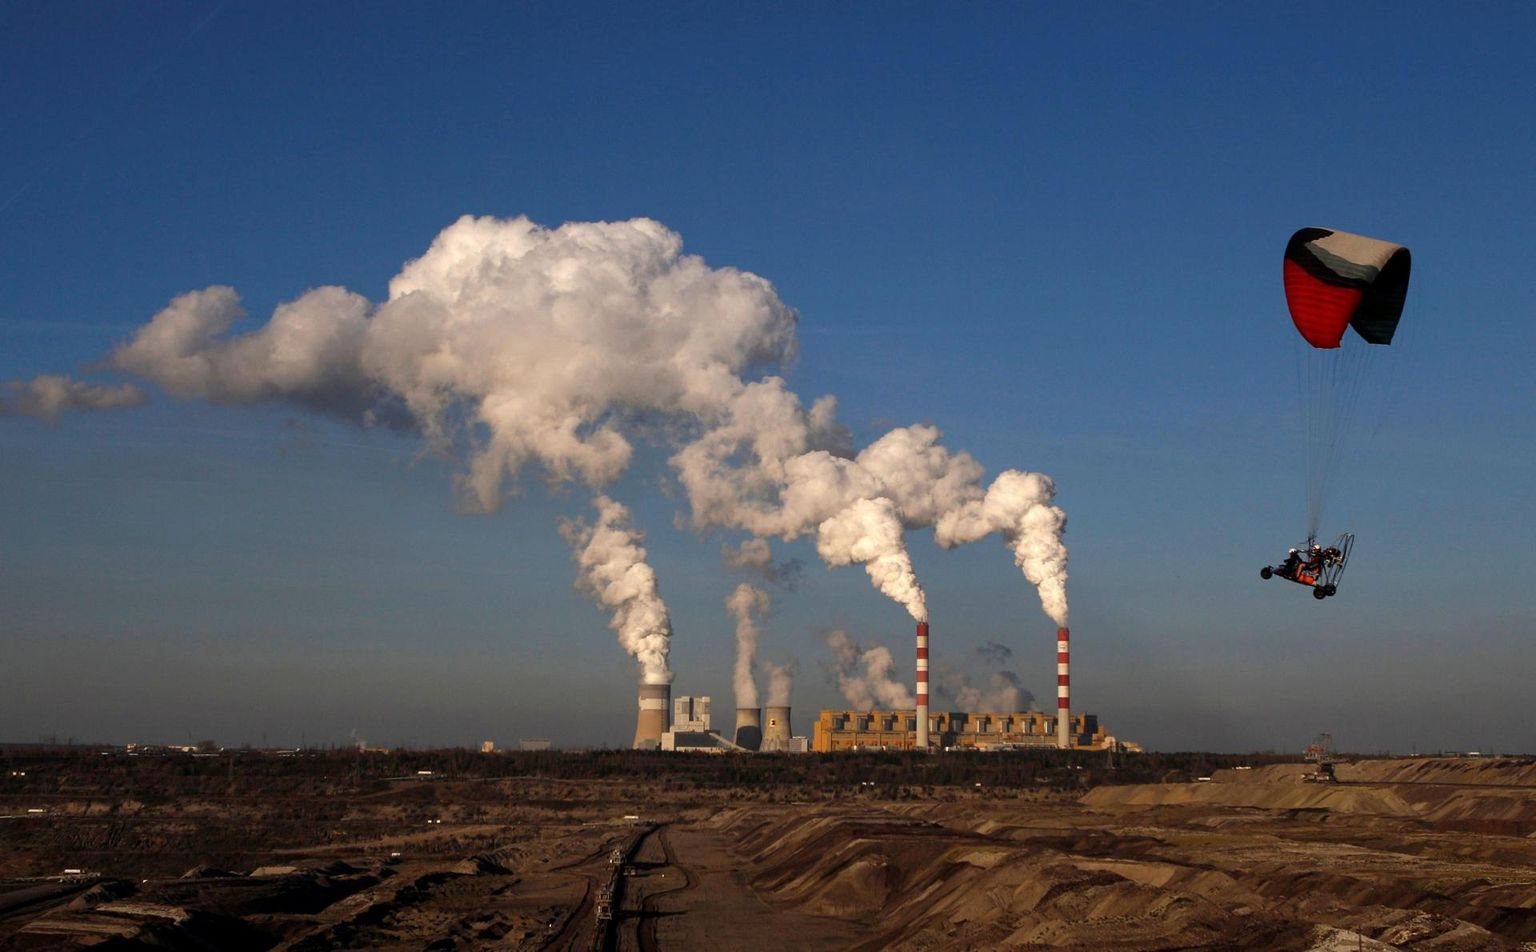 Kliimakohtumise korraldajamaa Poola elektrienergiast ligi 80 protsenti saadakse jätkuvalt kivisöest ning kuigi valitsus plaanib sõltuvust vaikselt vähendada, on nad välja tulnud ka plaaniga luua uusi kaevandusi. Pildil Belchatowi elektrijaam ja kaevandused.